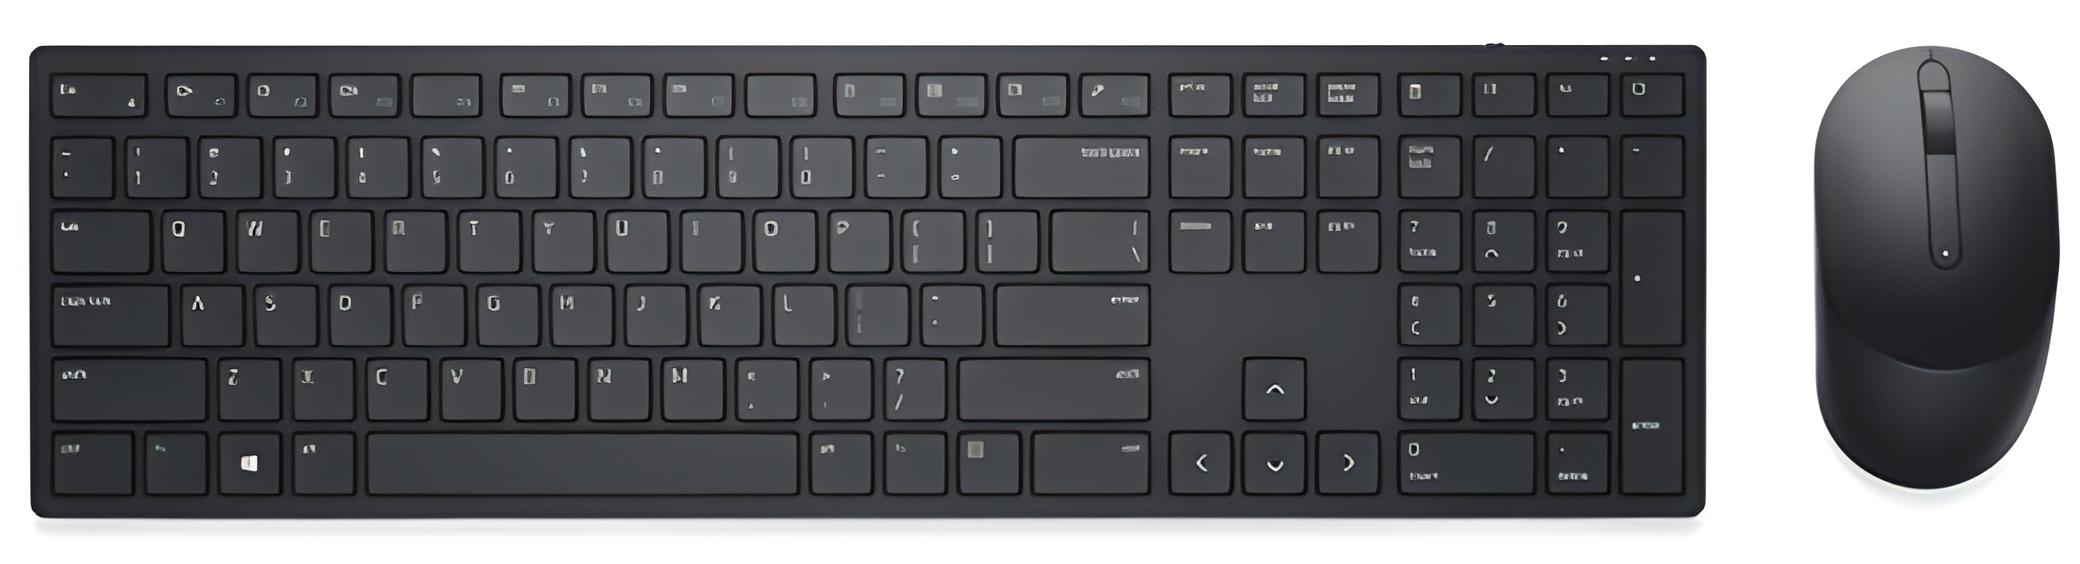 Dell Pro KM5221W Keyboard & Mouse - QWERTY - English (UK) - USB Wireless RF